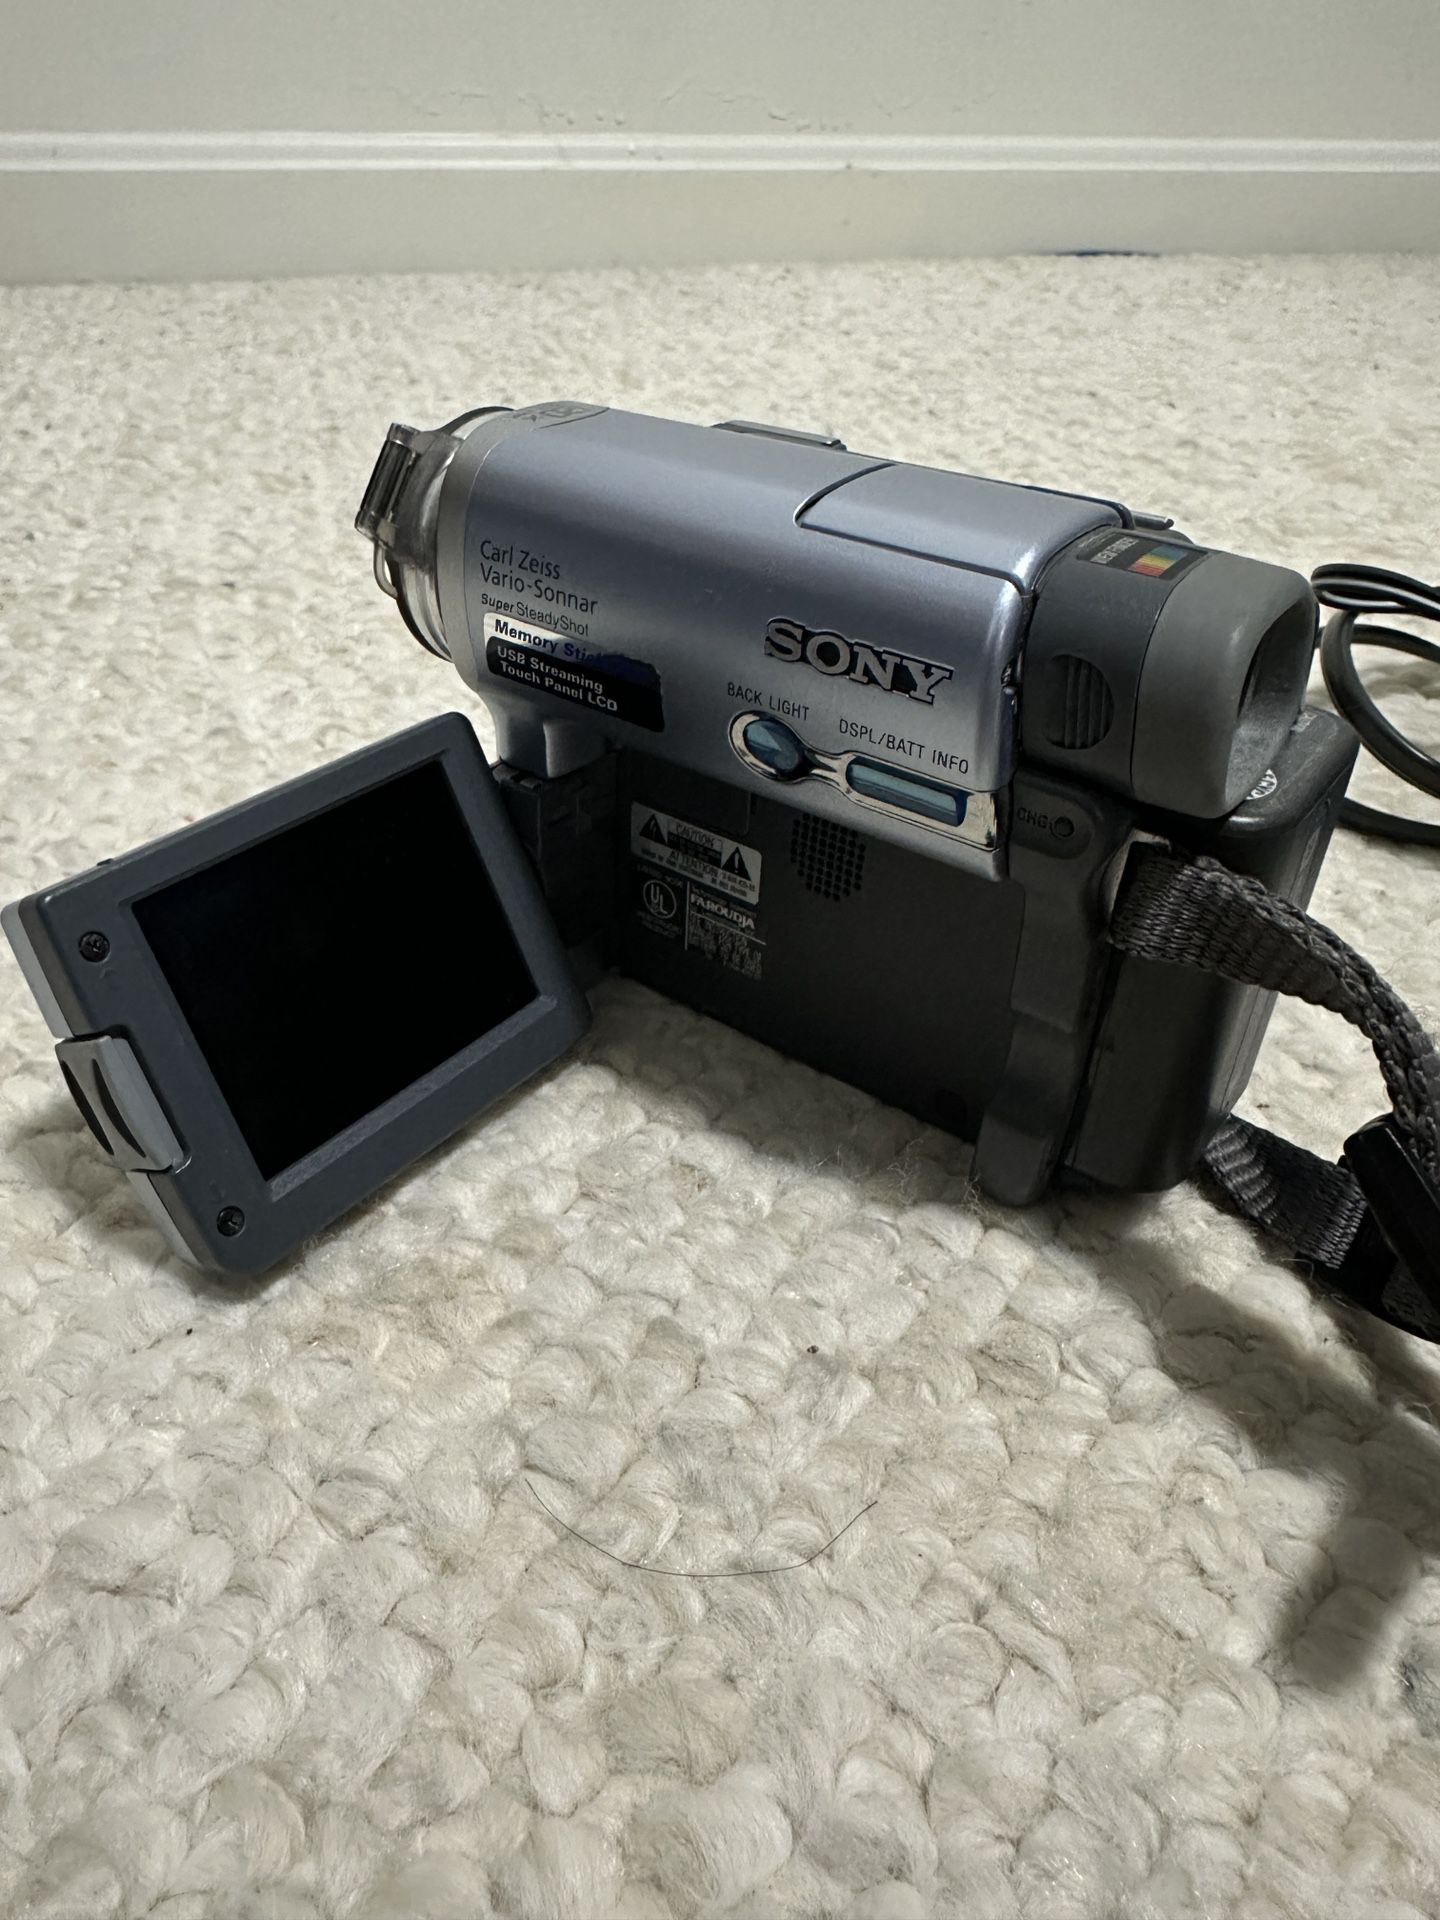 Sony DCR-TRV22 mini-DV video camera